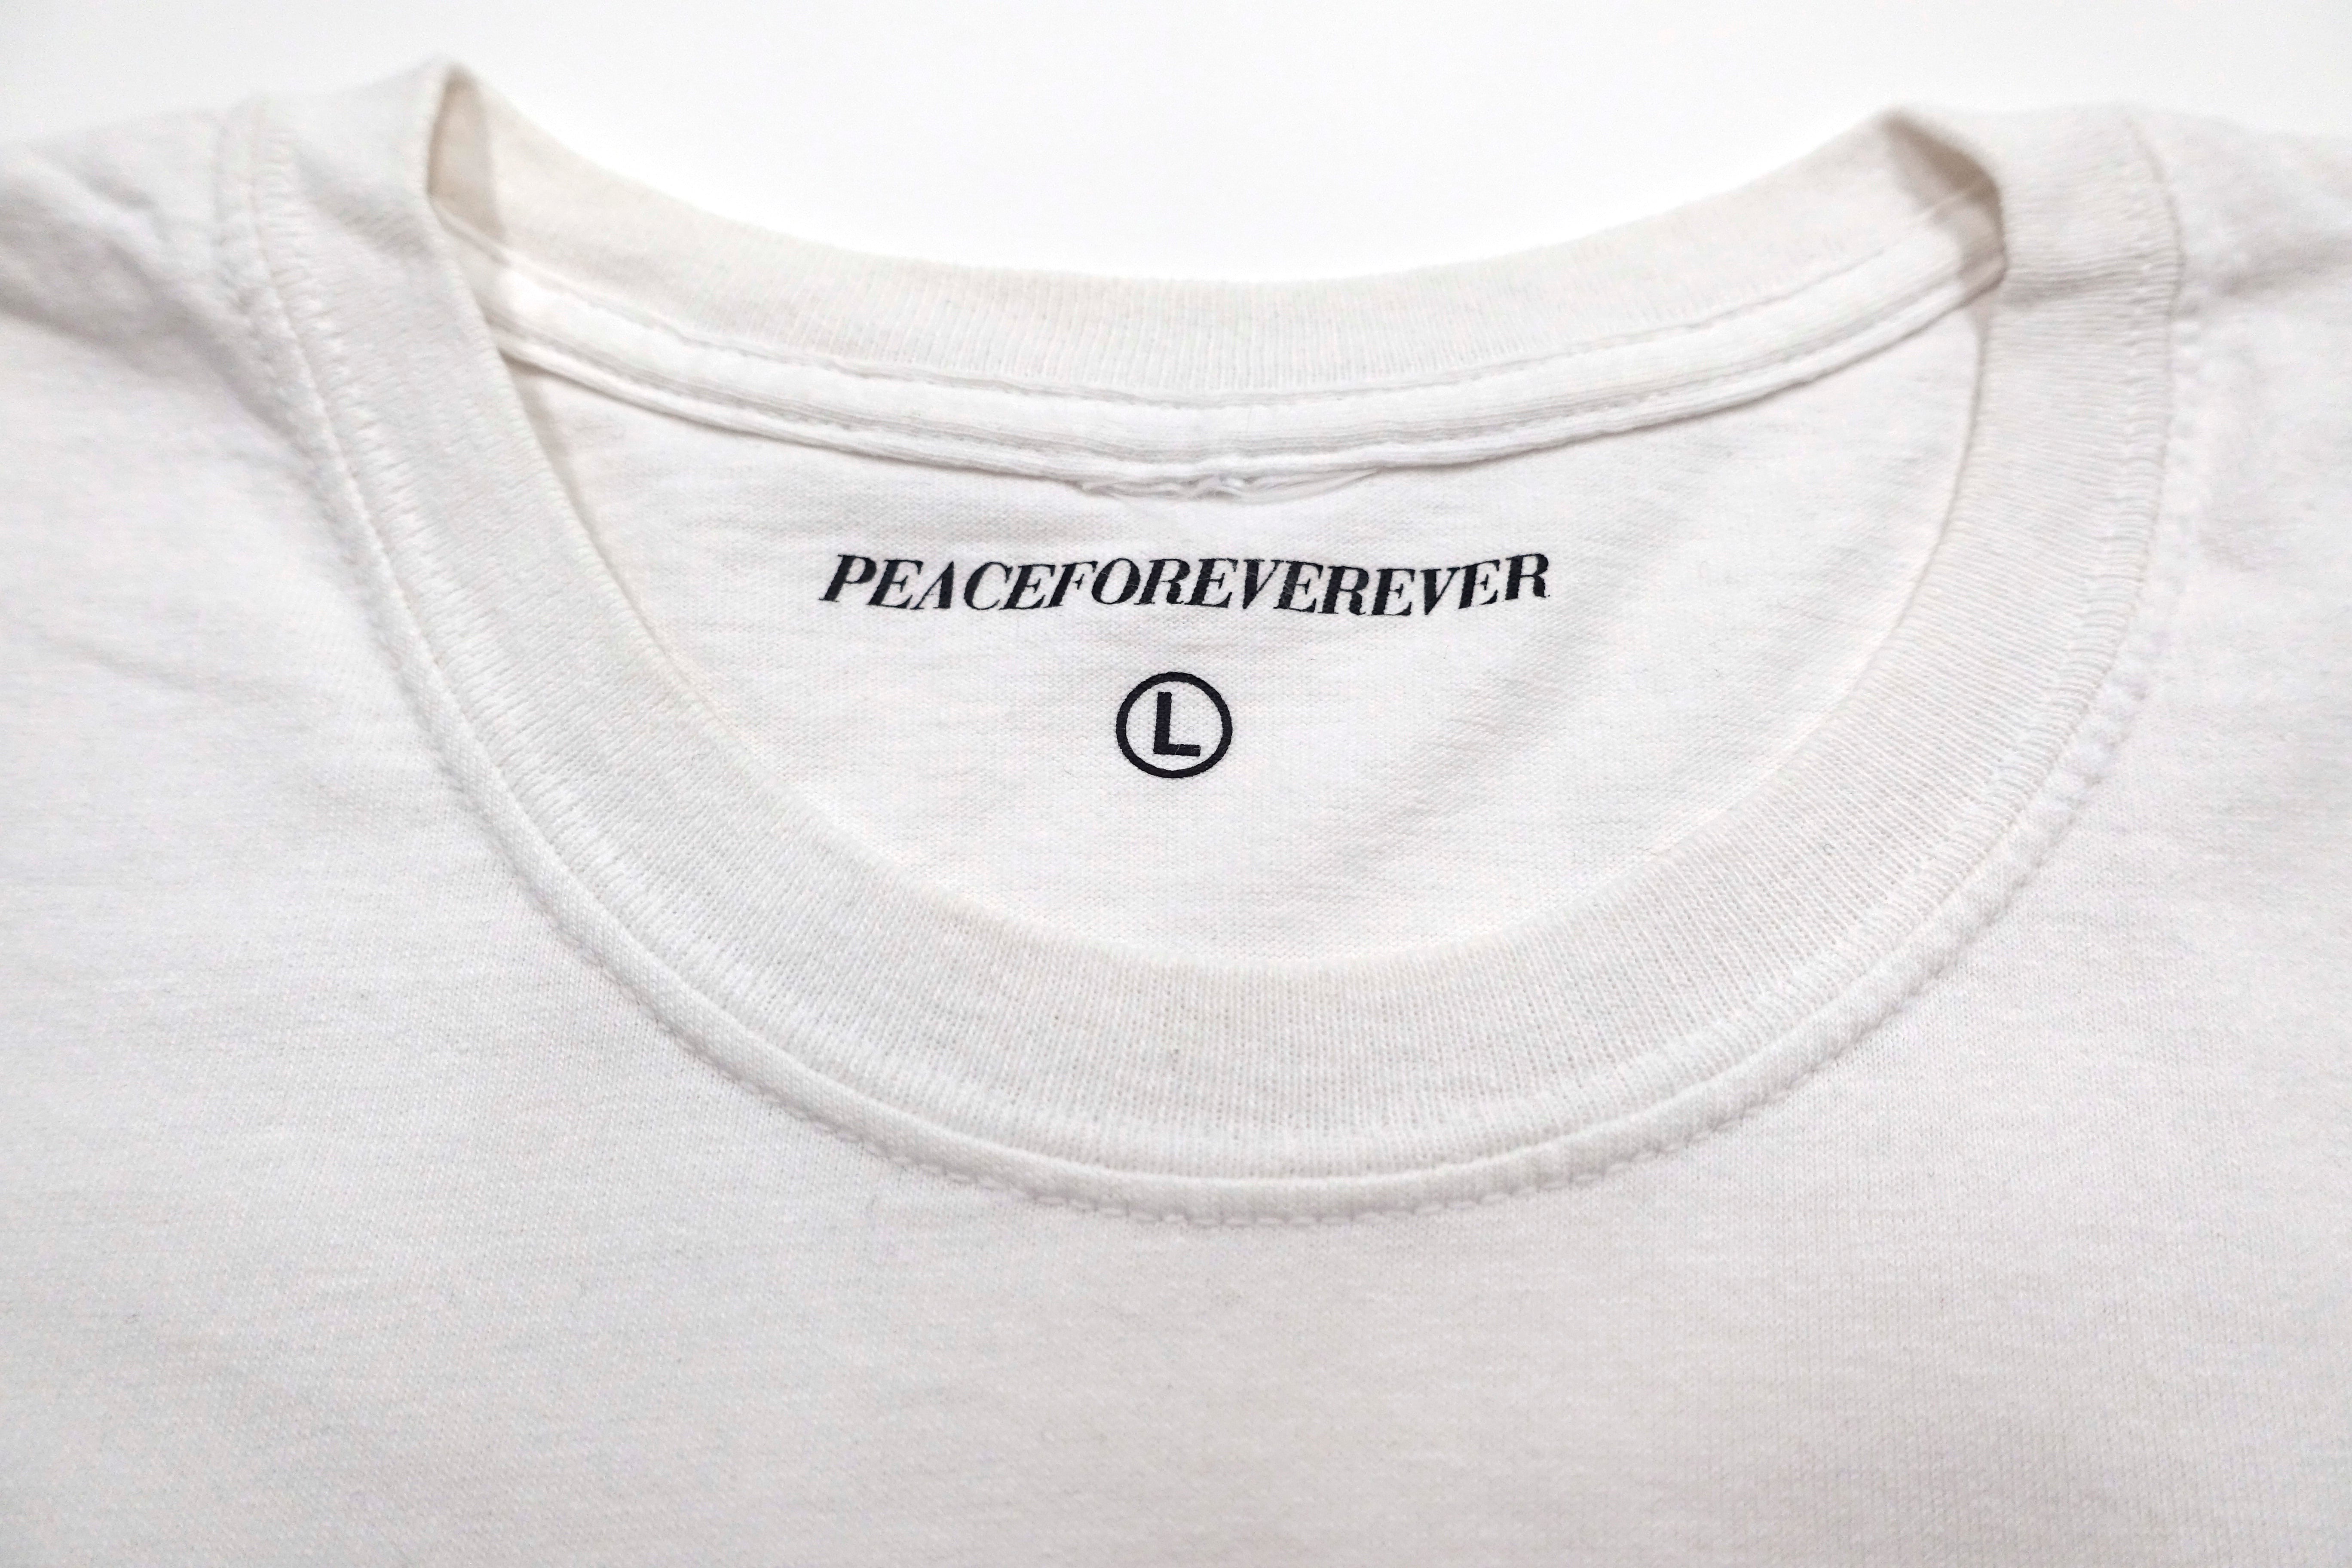 Peace ‎– Delicious EP 2012 Tour Shirt Size Large